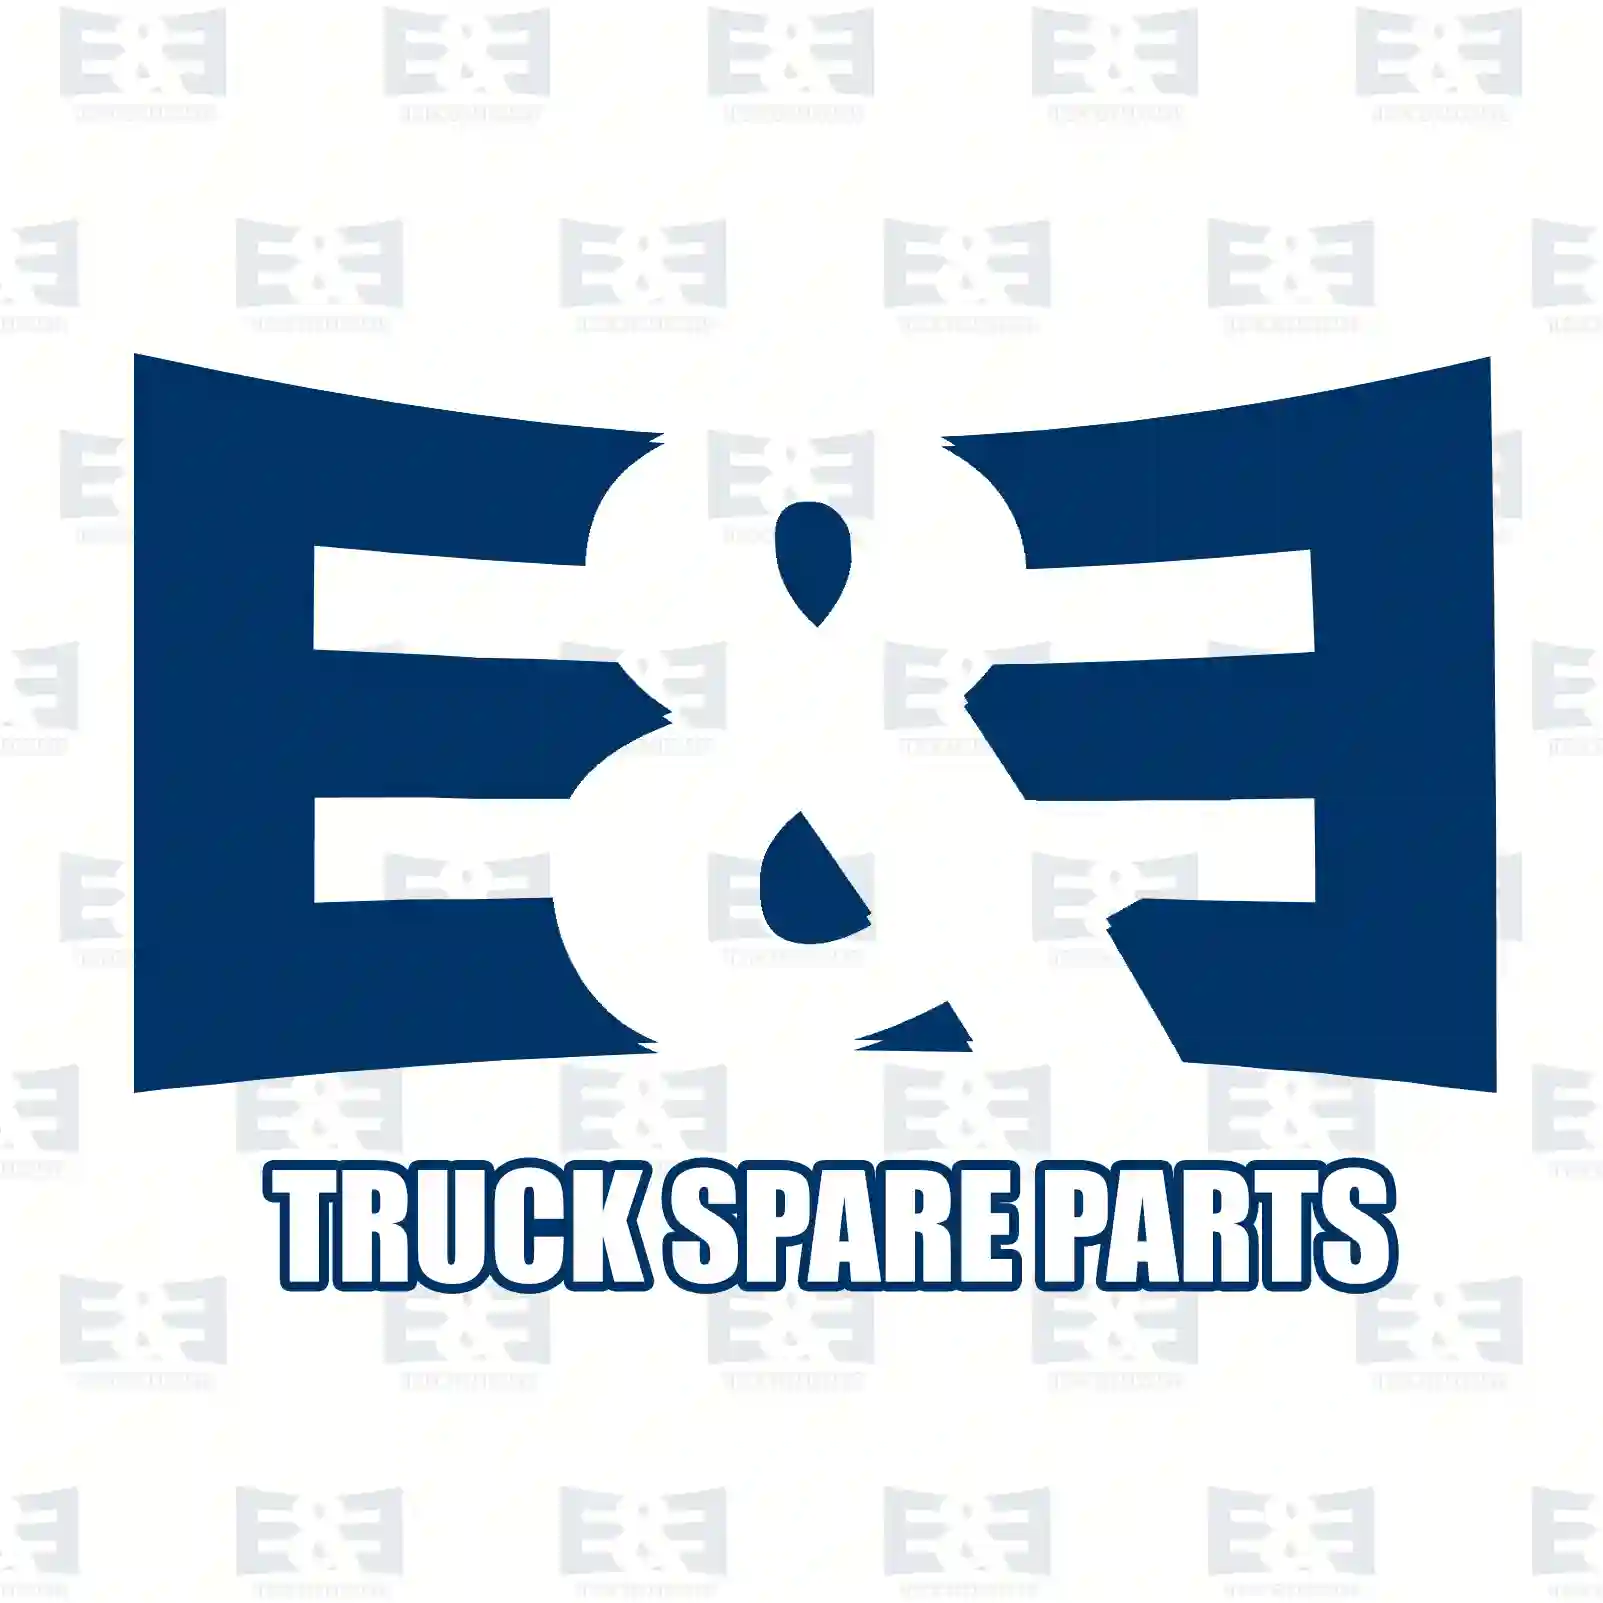 Foot brake valve, 2E2295047, 0044314905, 0044316205, ZG50469-0008 ||  2E2295047 E&E Truck Spare Parts | Truck Spare Parts, Auotomotive Spare Parts Foot brake valve, 2E2295047, 0044314905, 0044316205, ZG50469-0008 ||  2E2295047 E&E Truck Spare Parts | Truck Spare Parts, Auotomotive Spare Parts